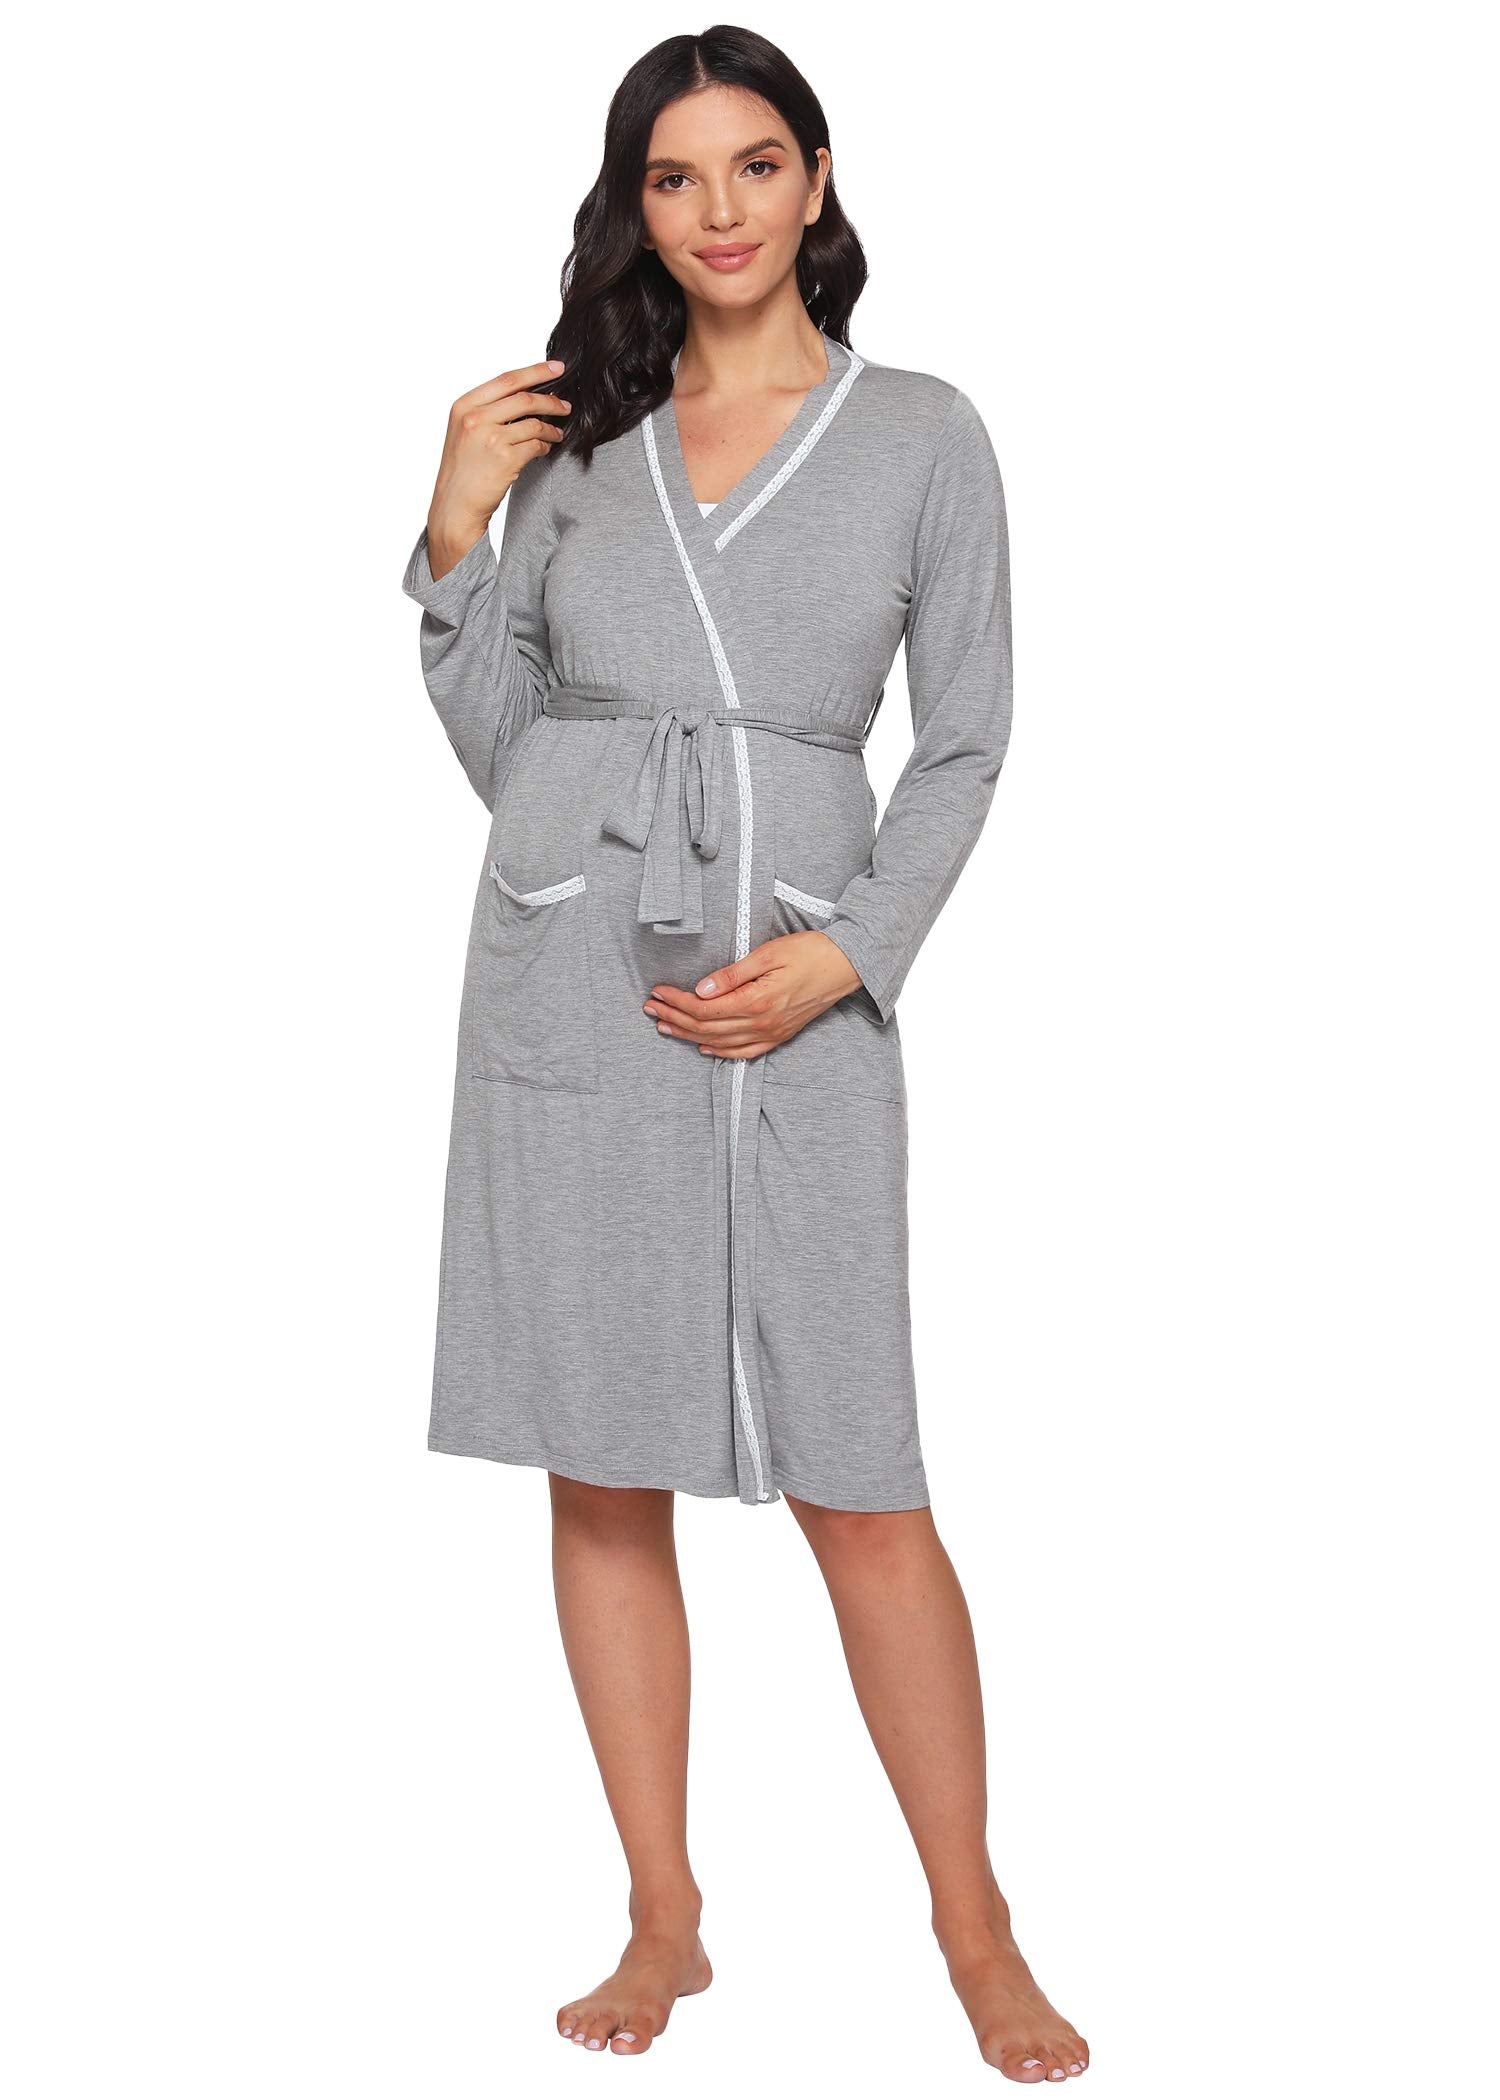 Women's Soft Bamboo Viscose Maternity Nursing Robe - Latuza